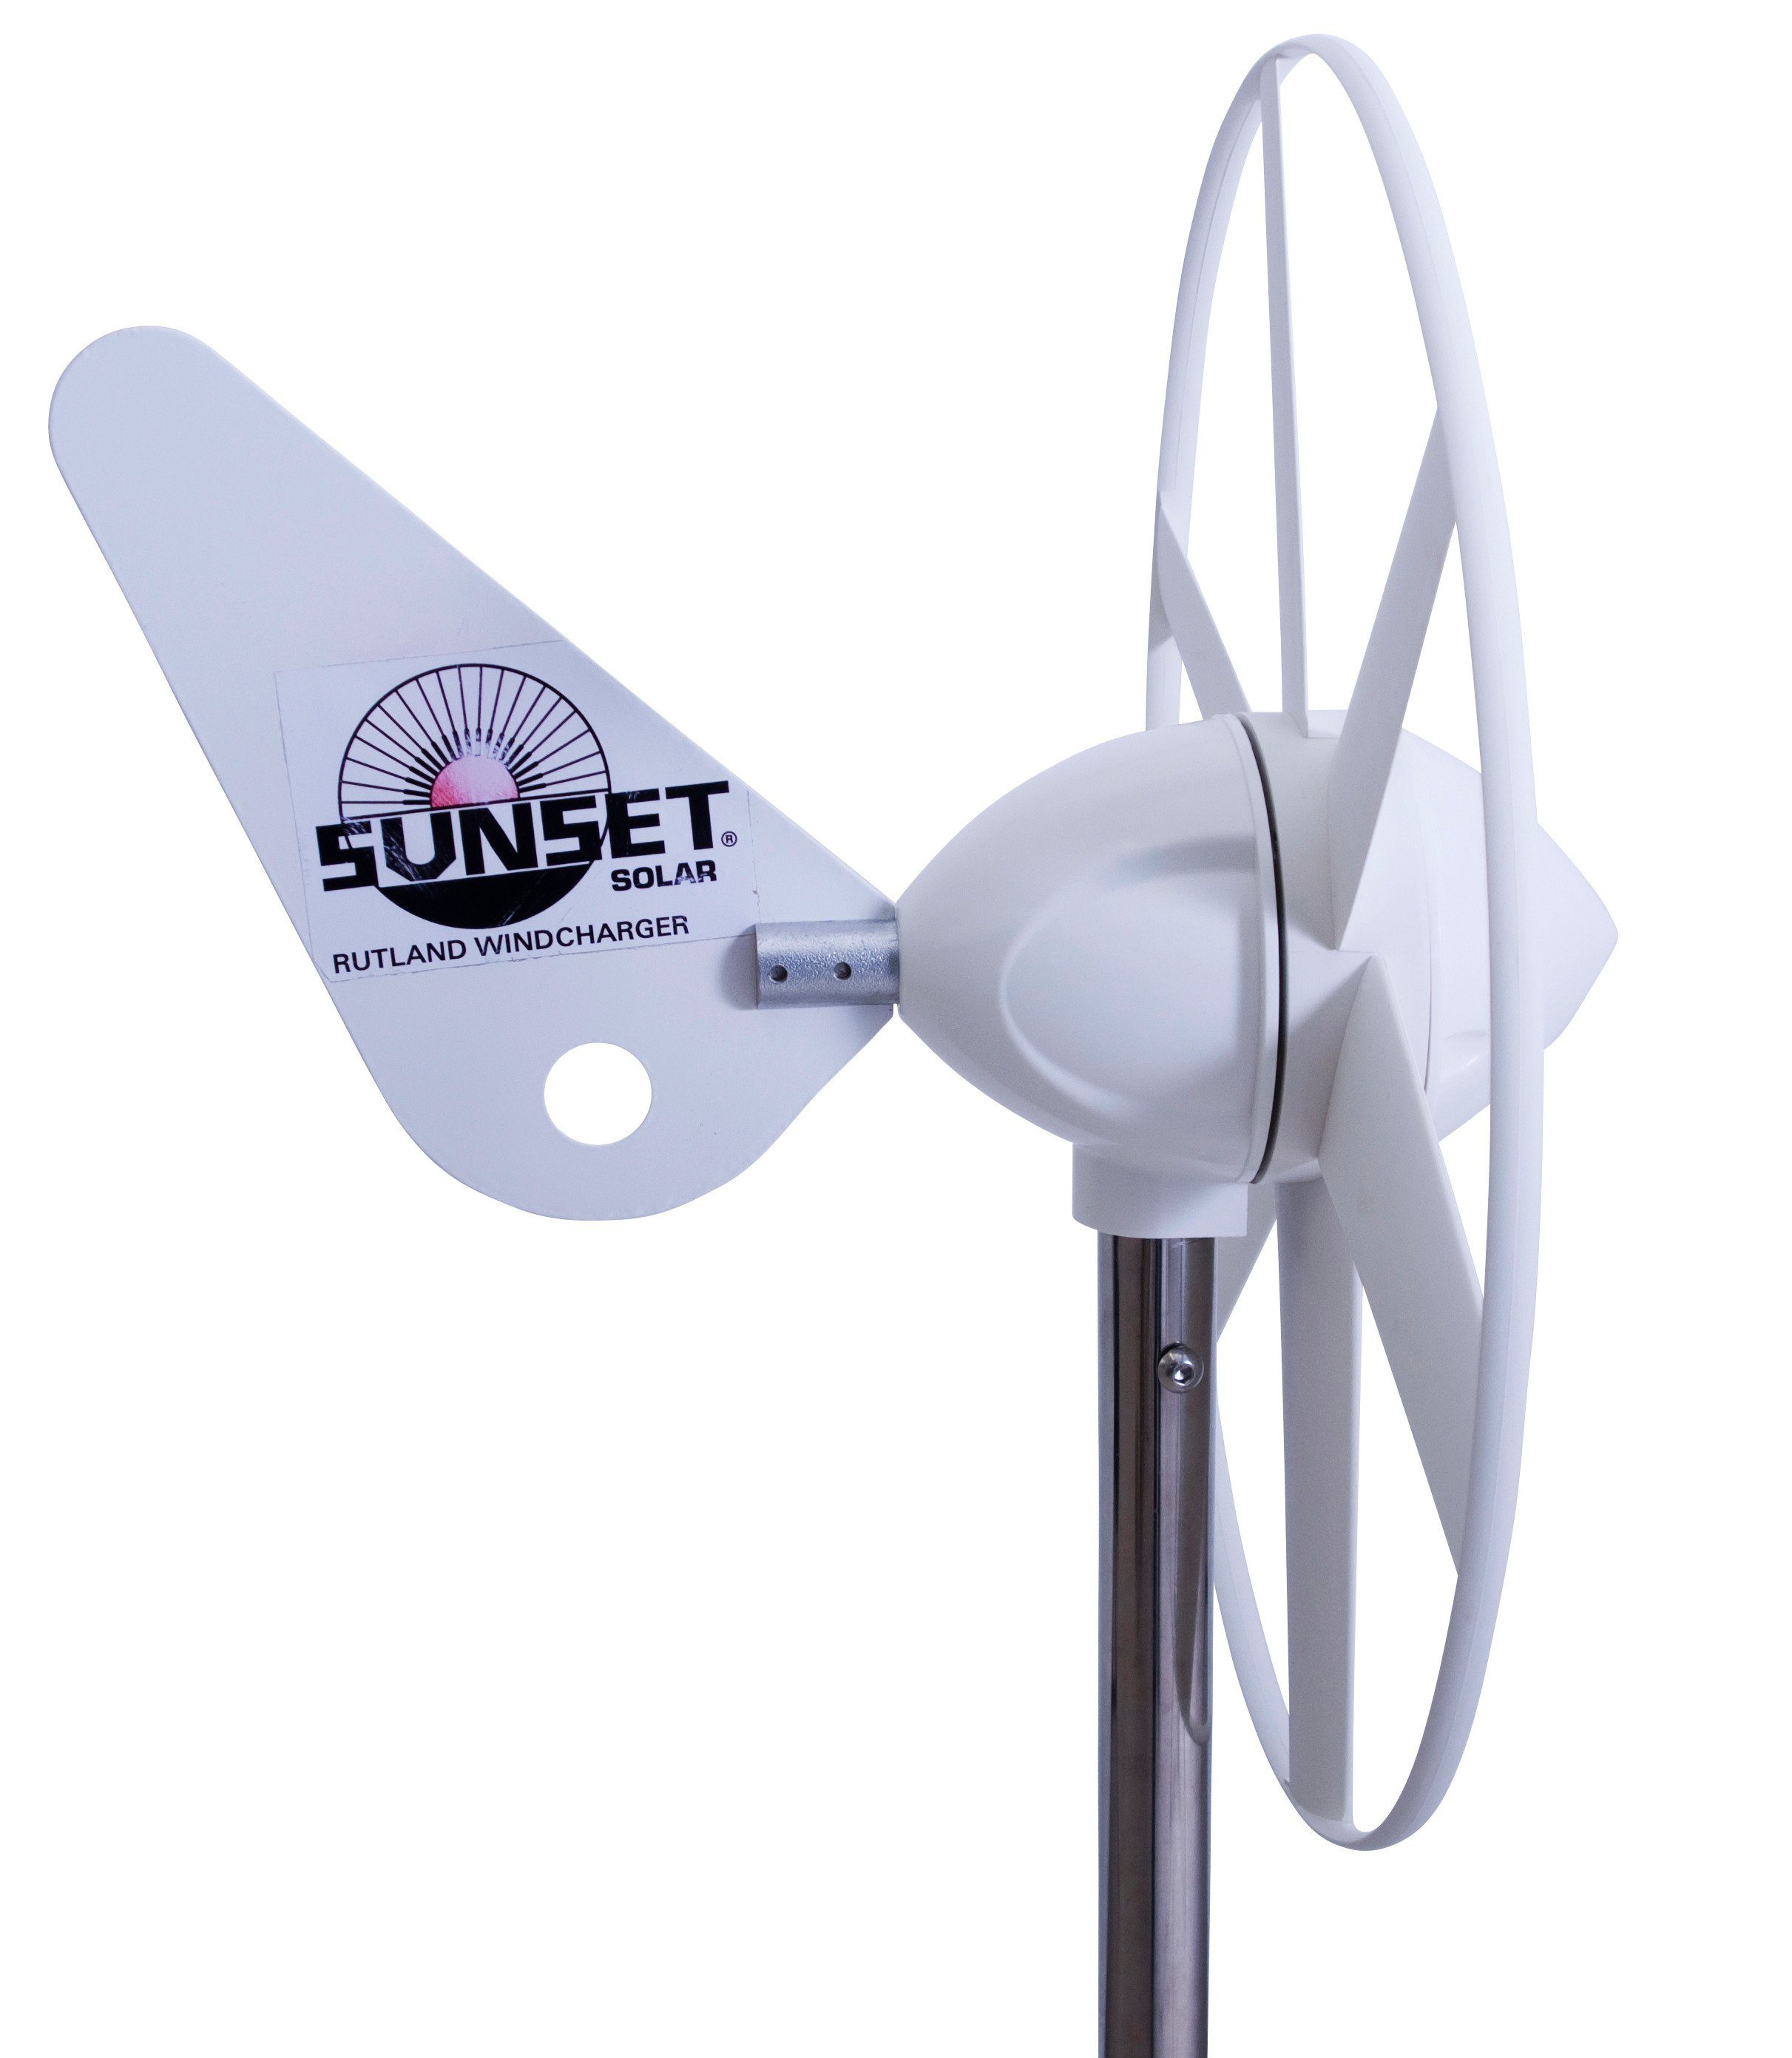 Sunset Windgenerator Solarenergie 12 WG als V, Ergänzung 12 W, 504, zur 80 V